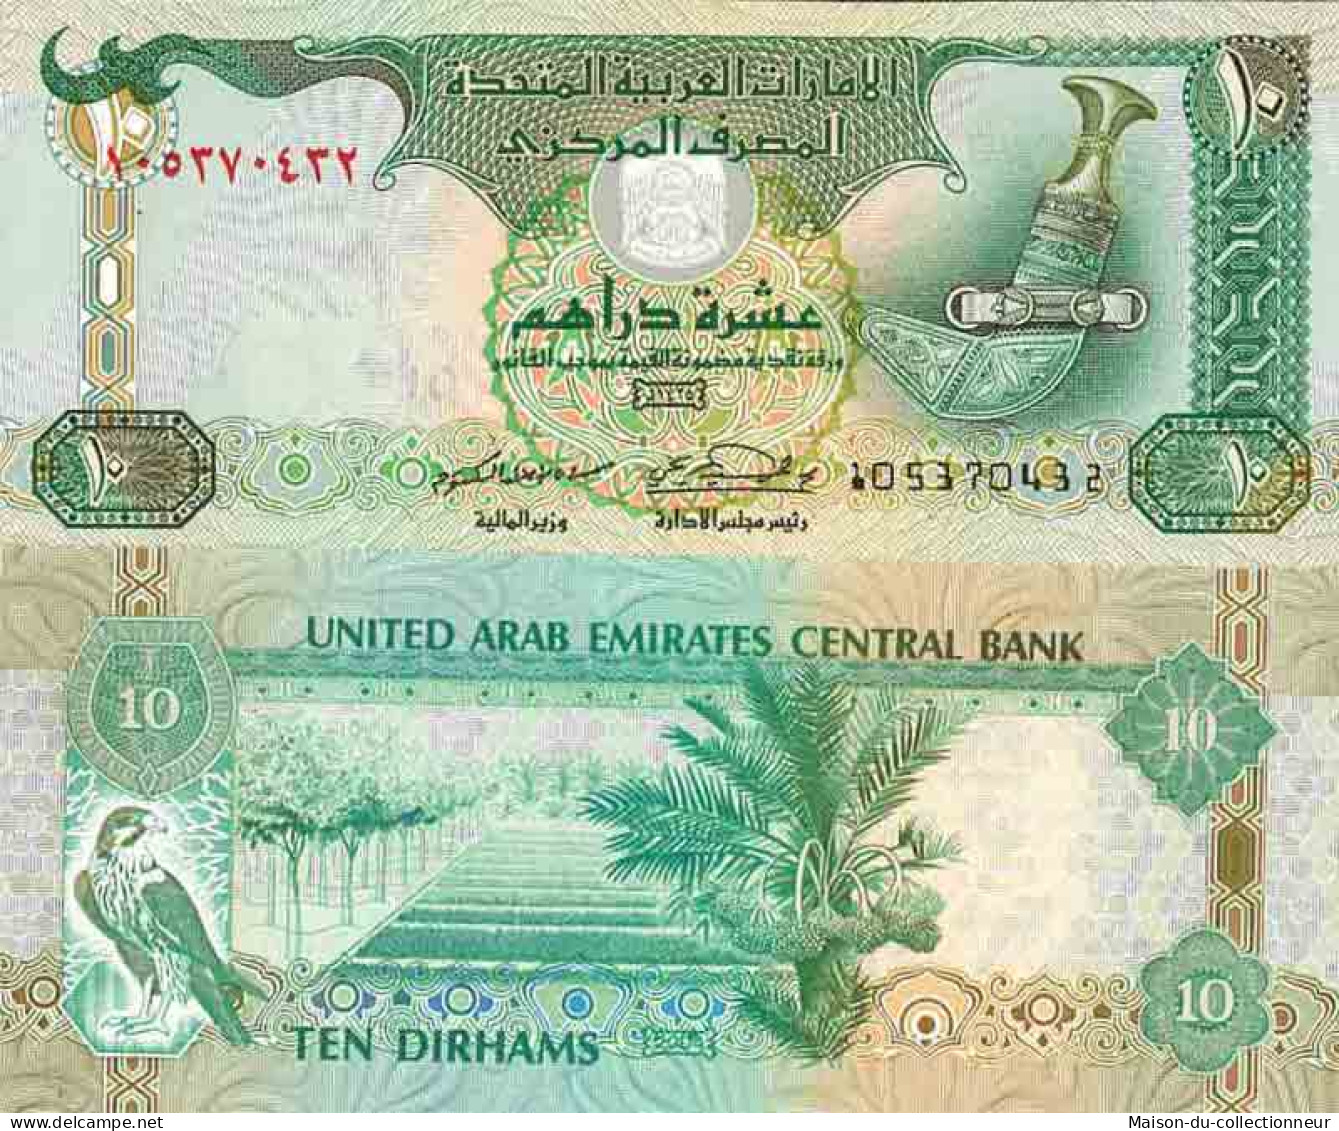 Billet De Banque Collection Emirats Arabes Unis - PK N° 20 - 10 Dirhams - Verenigde Arabische Emiraten